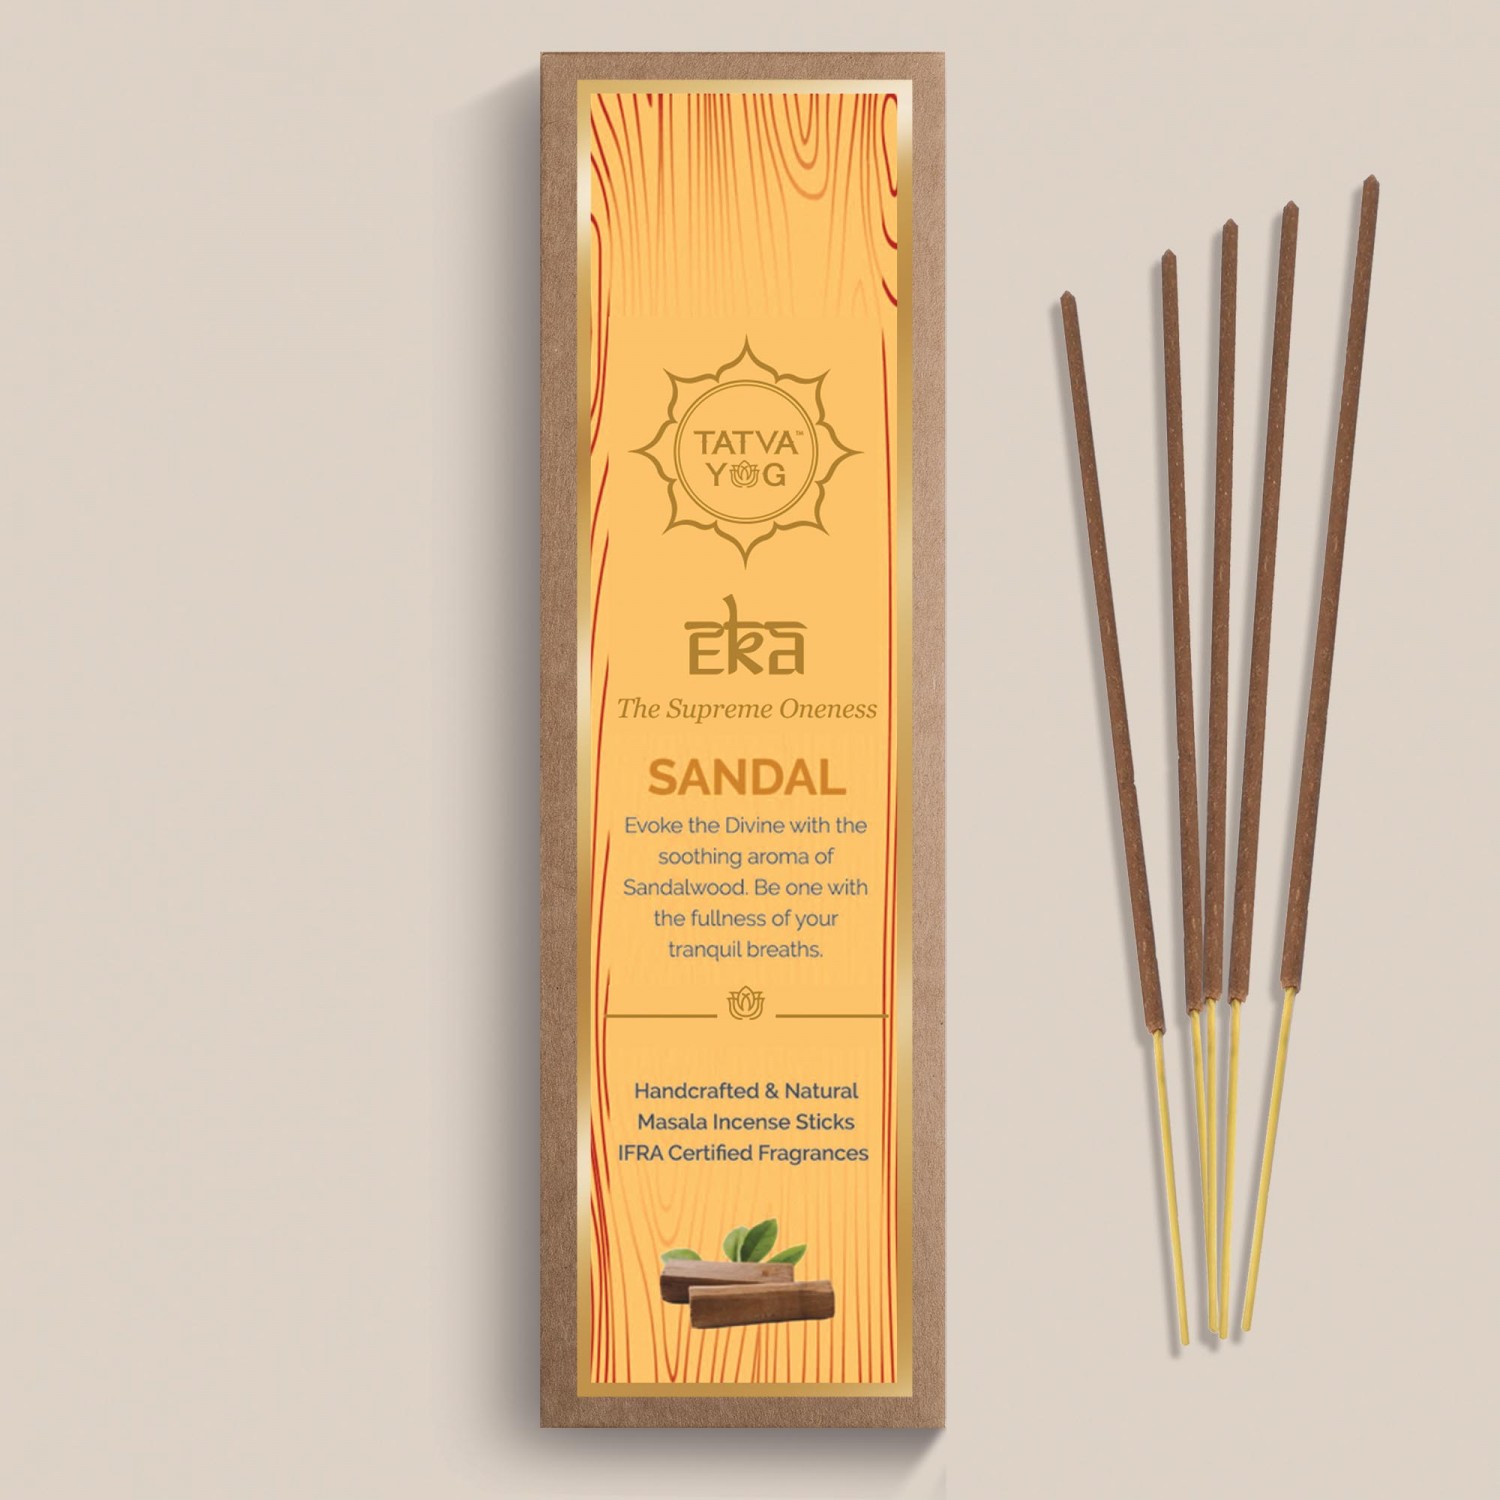 eka---sandal-handcrafted-&-natural-masala-incense-sticks